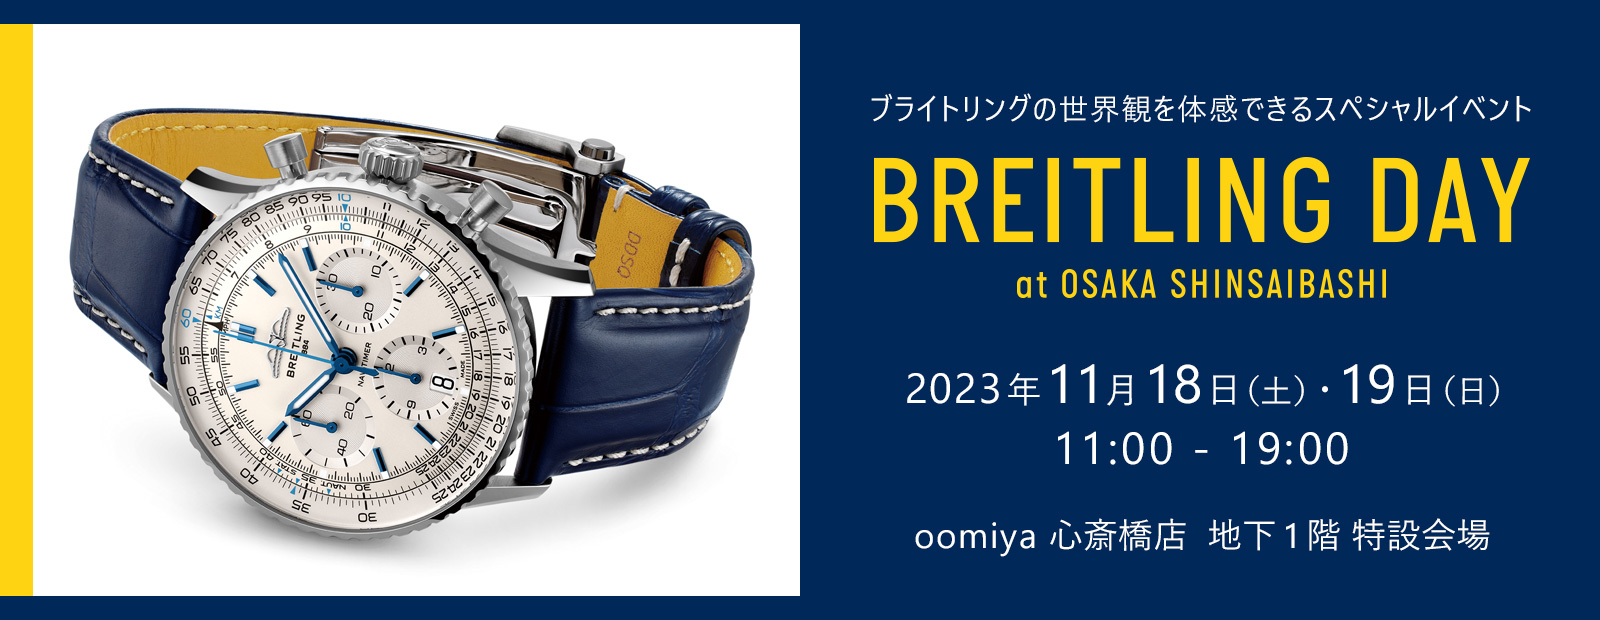 ナビタイマー 01 リミテッド Ref.AB0121(S232B48NP) 品 メンズ 腕時計